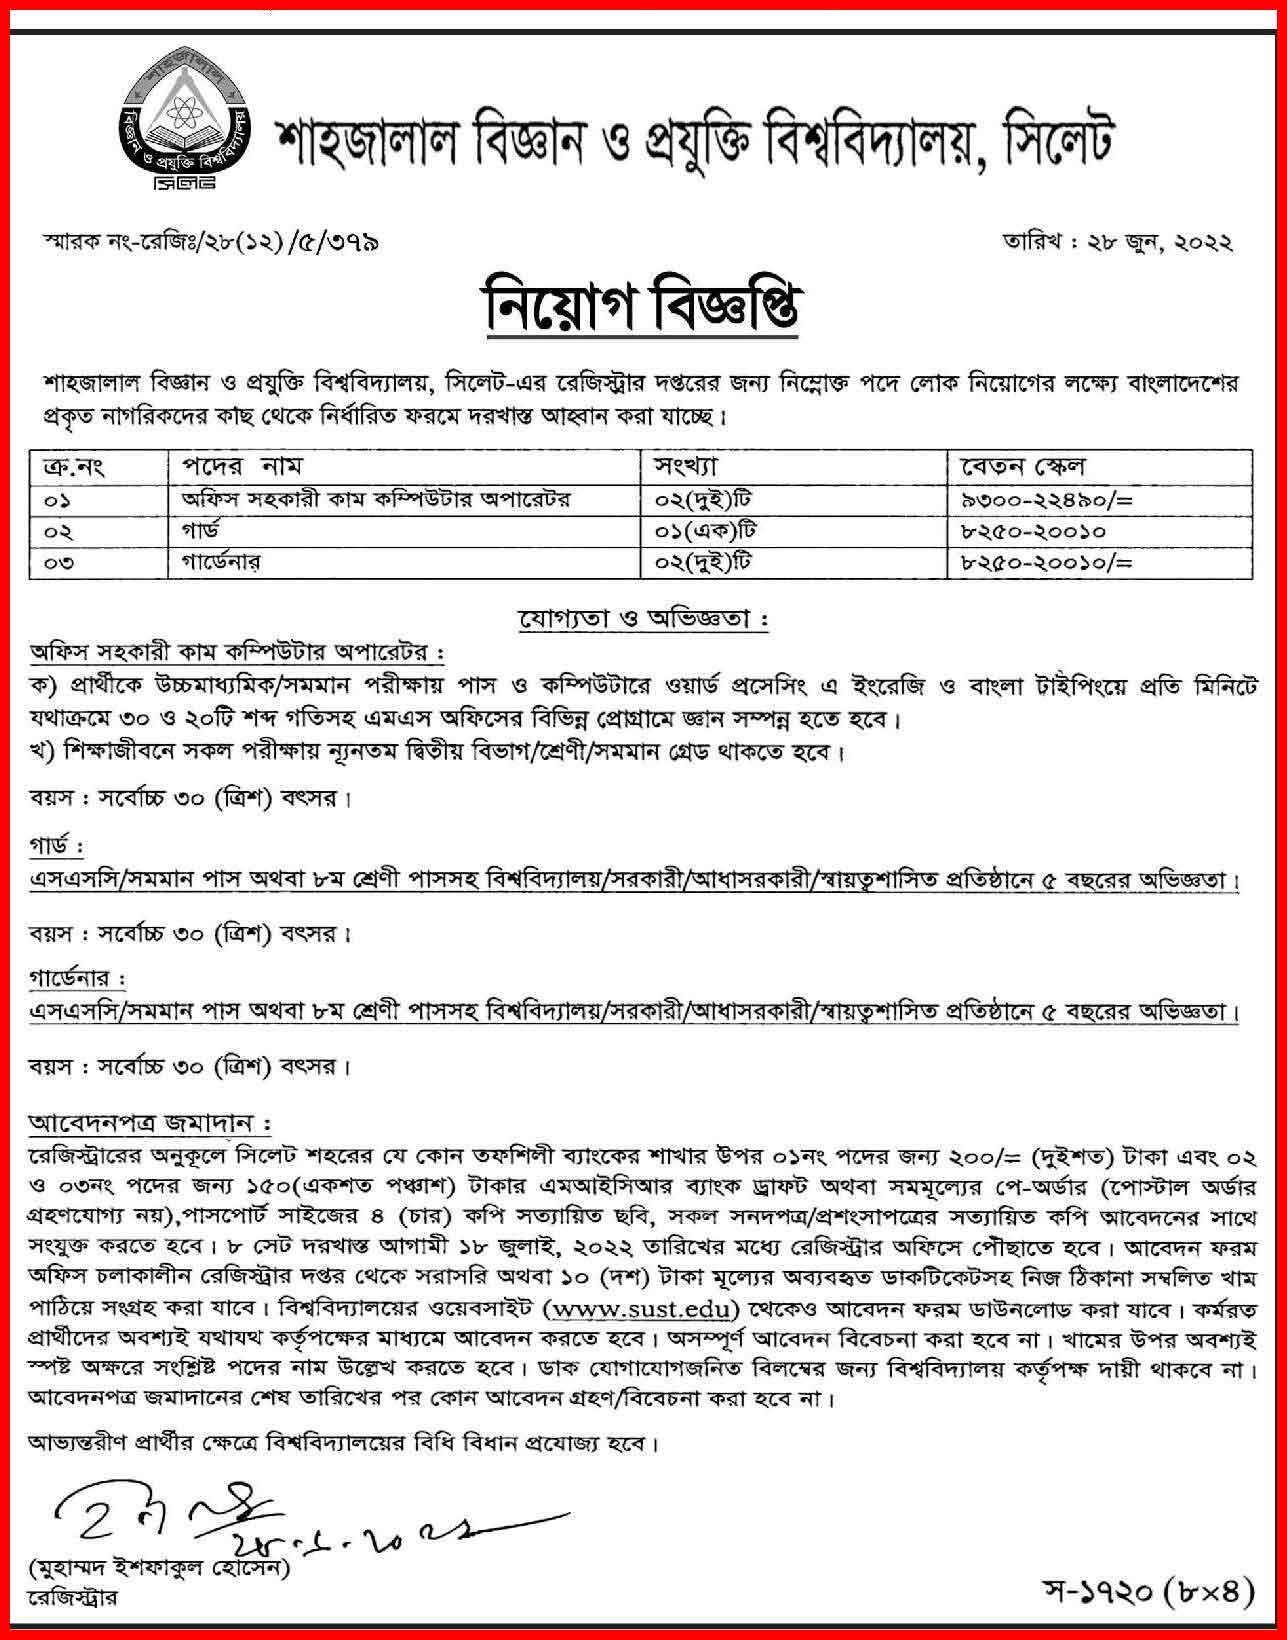 সিলেট শাহজালাল বিজ্ঞান ও প্রযুক্তি বিশ্ববিদ্যালয় নিয়োগ ২০২২ । Sylhet Shahjalal University of Science and Technology Recruitment 2022.